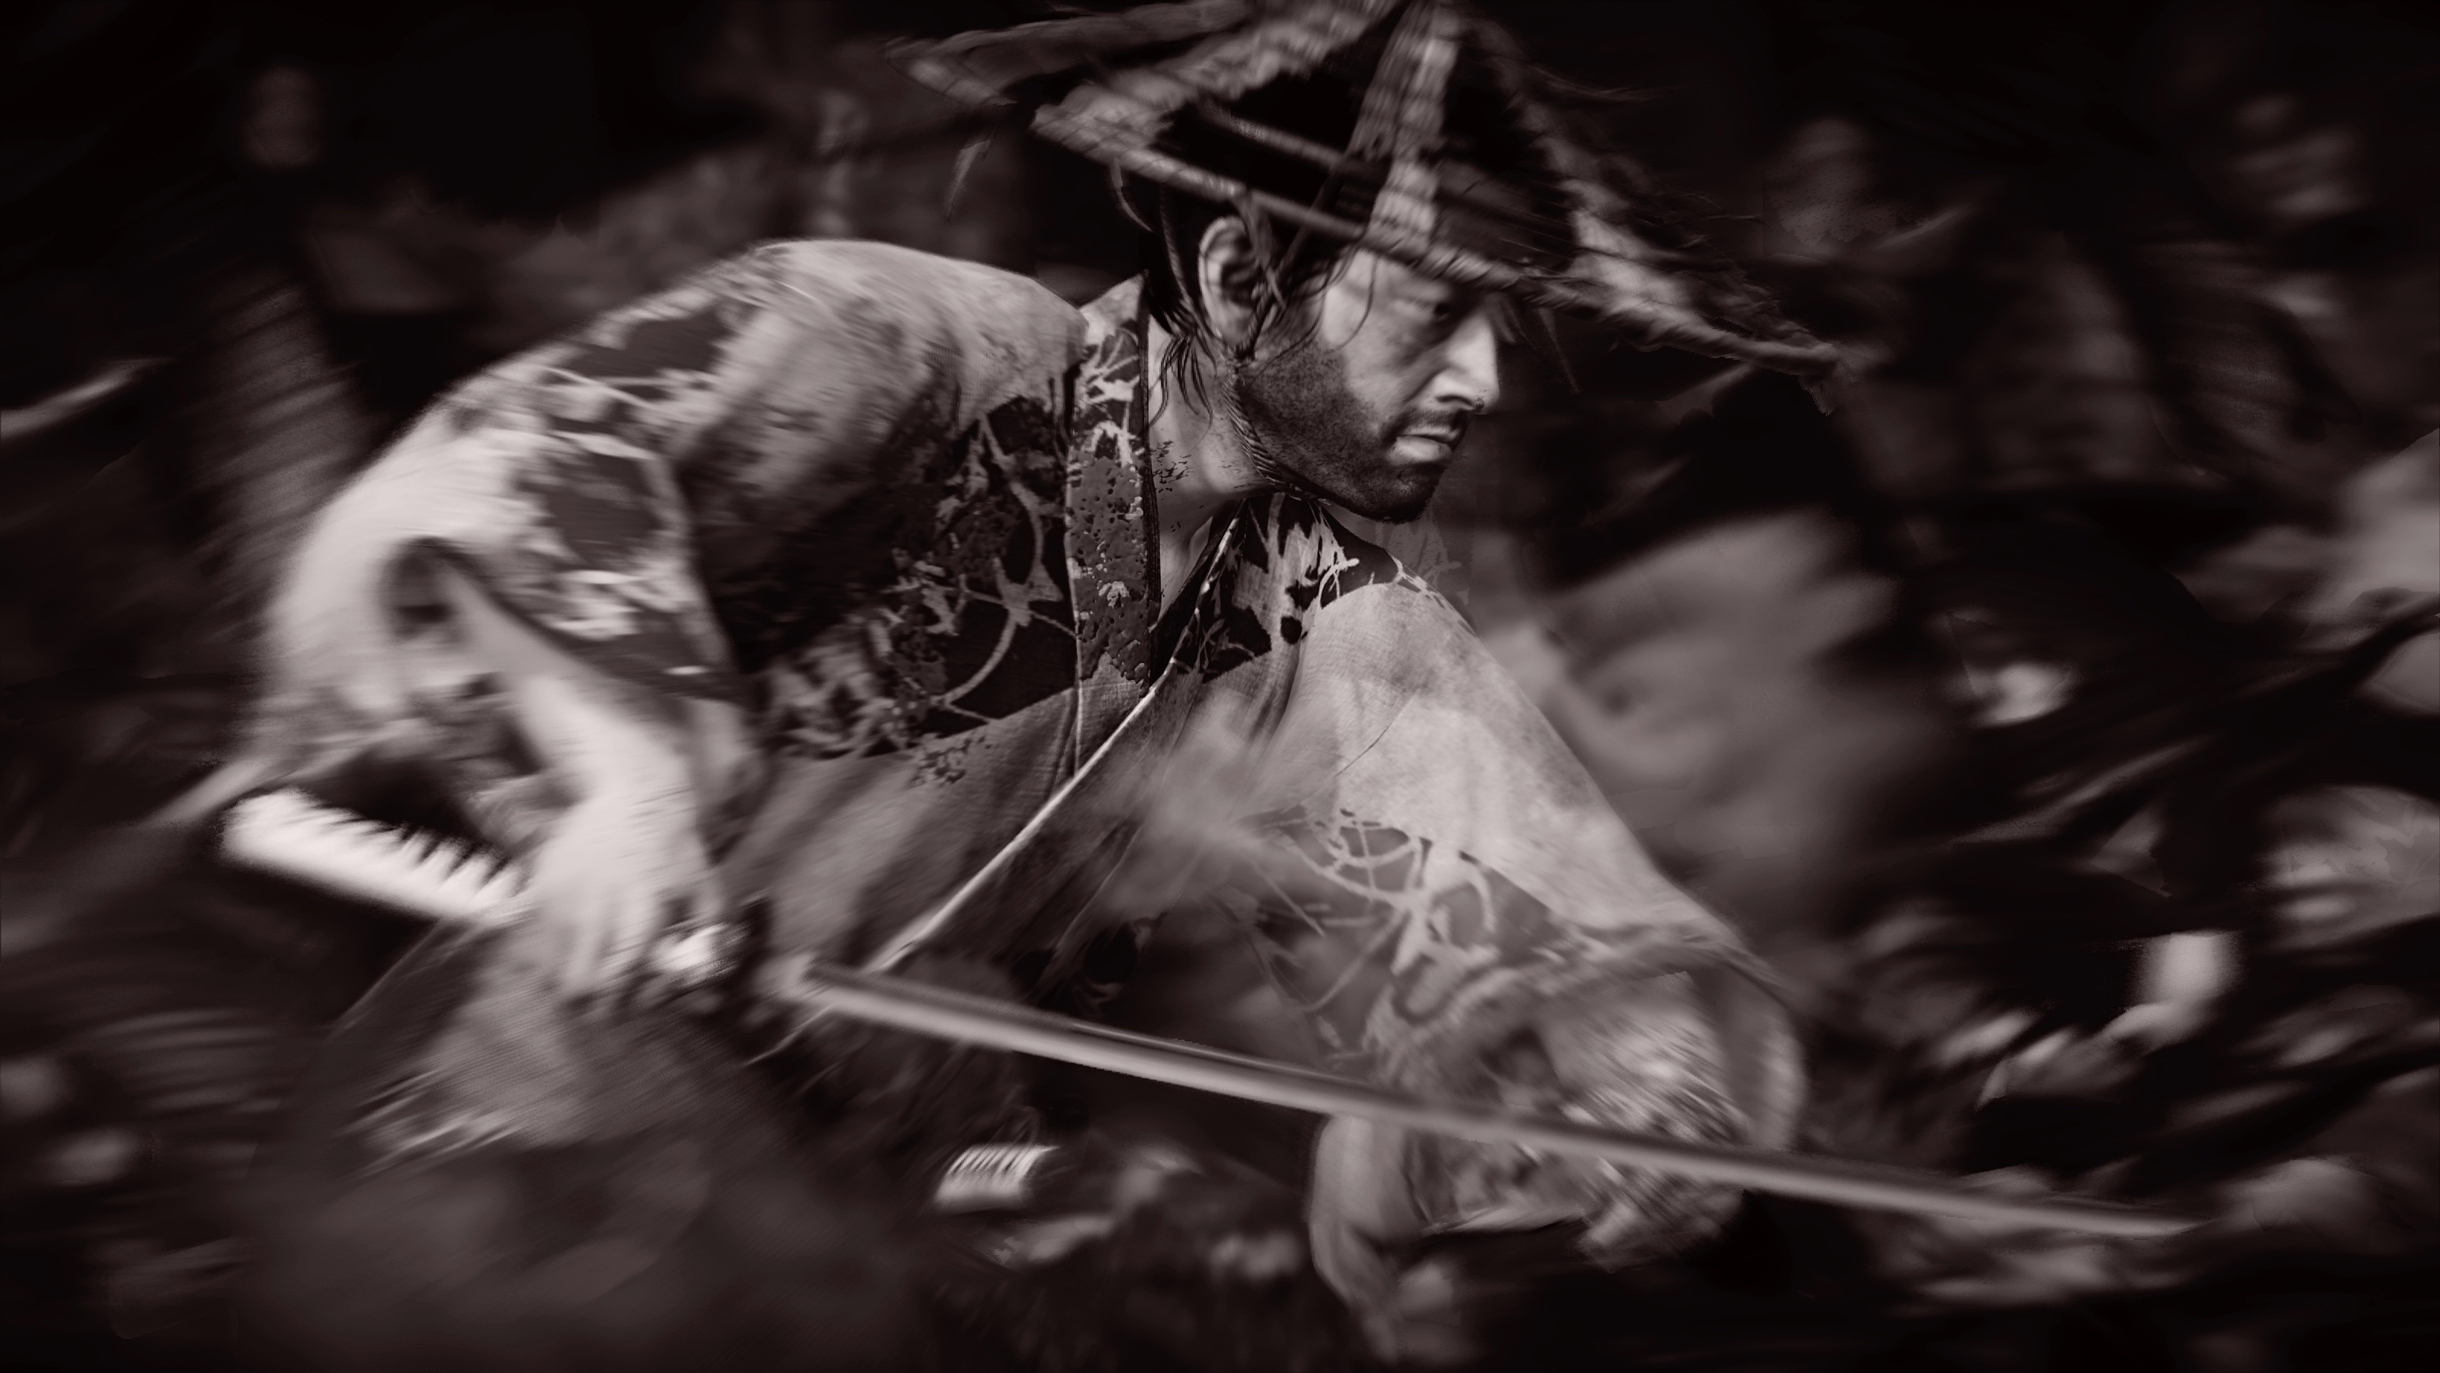 Игру можно пройти с черно-белым фильтром, вдохновленным фильмами Акиры Куросавы вроде «Семи самураев»